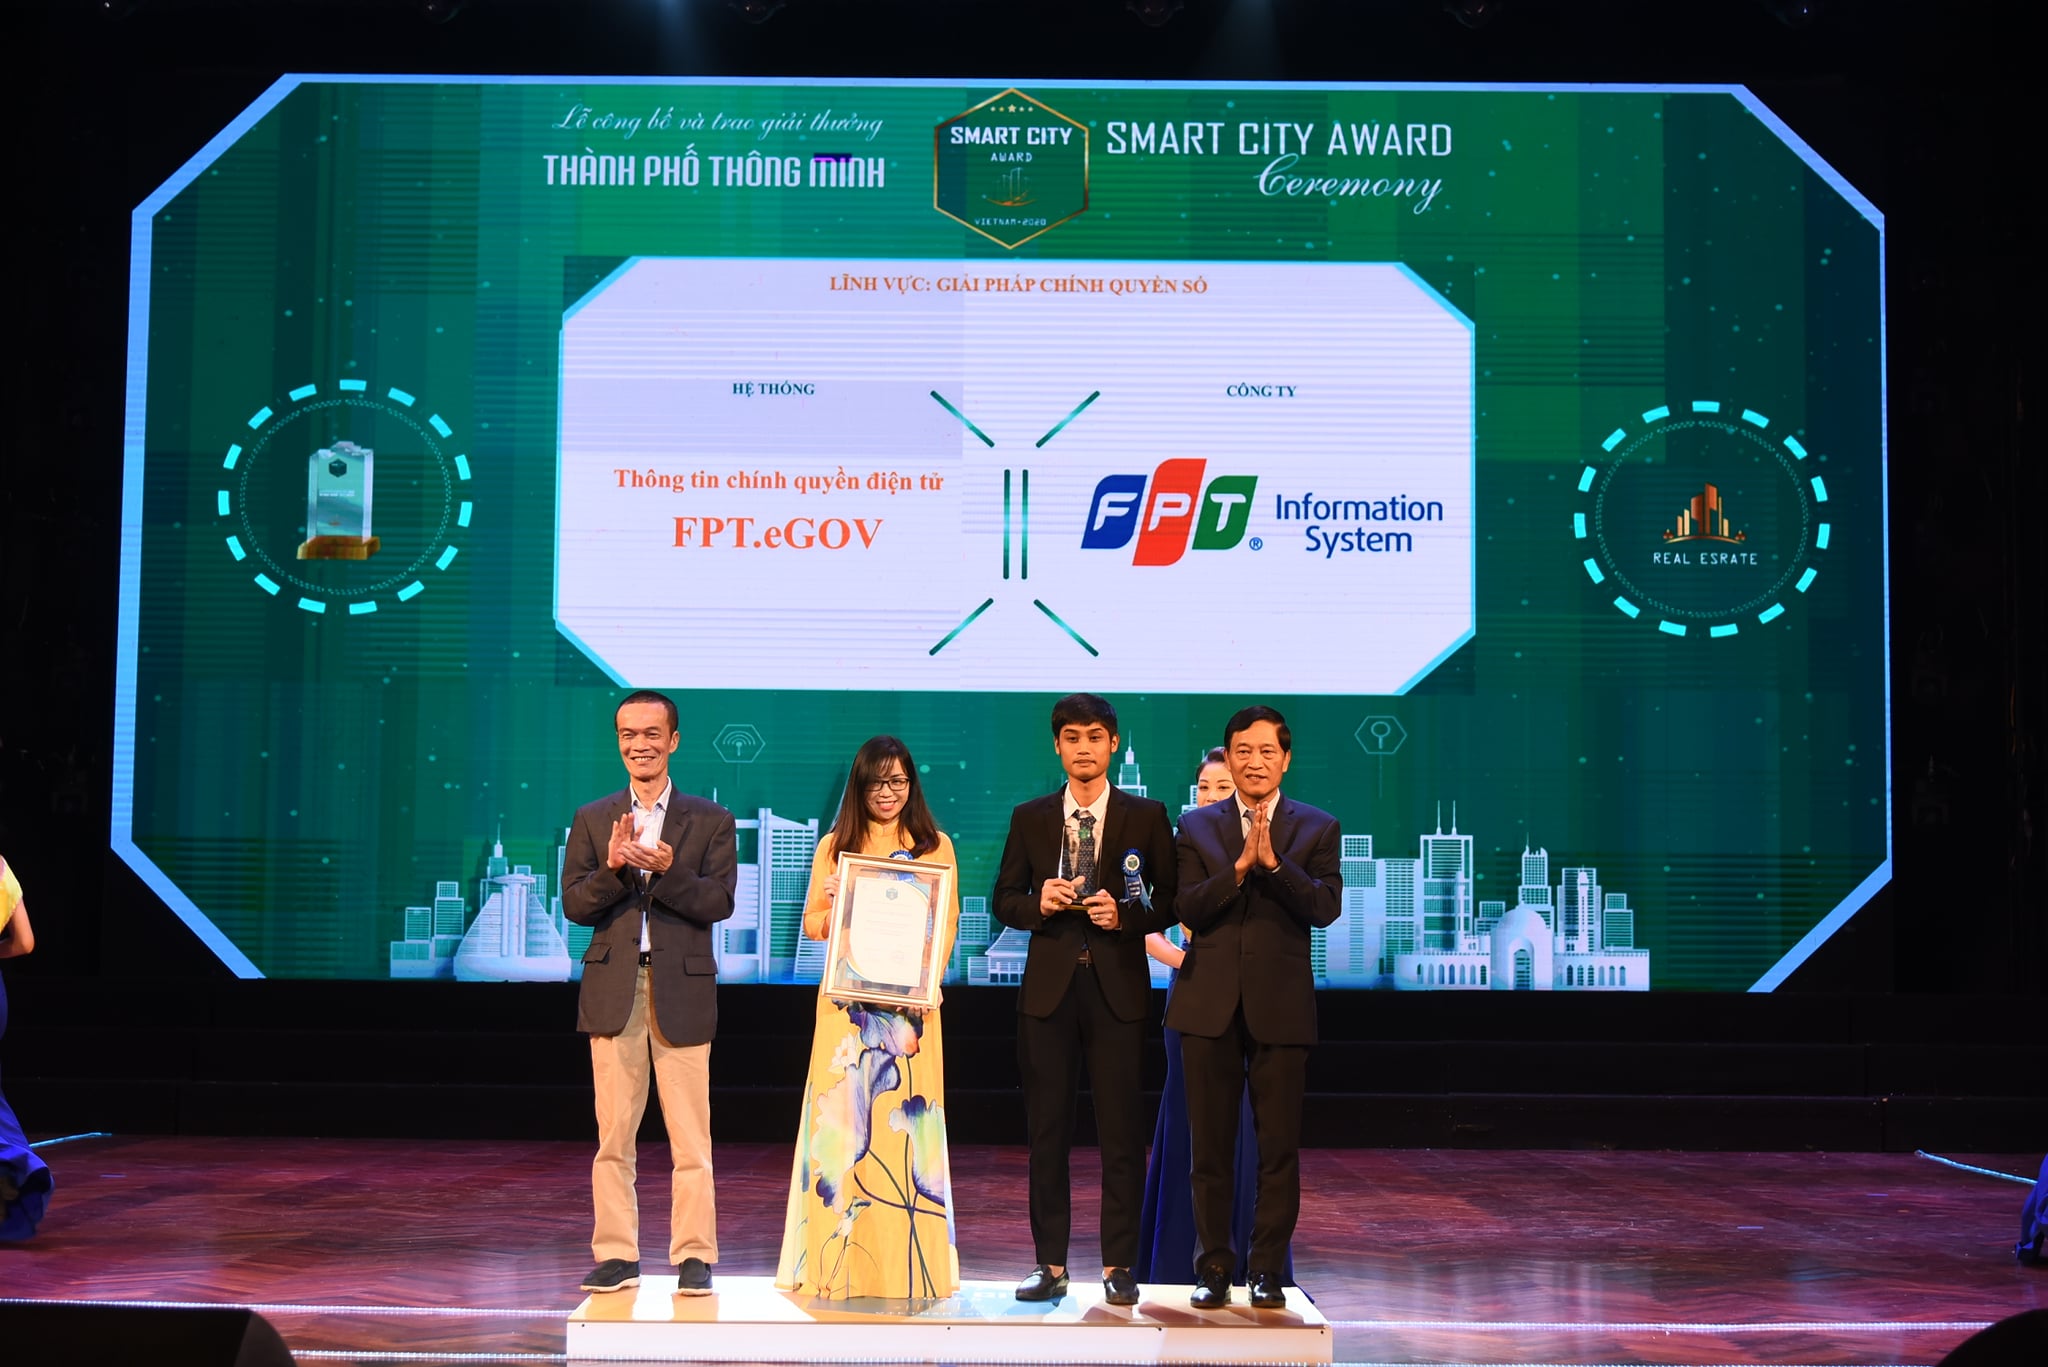 2020 Vietnam Smart City Awards – e-Government Information System (FPT.eGOV)